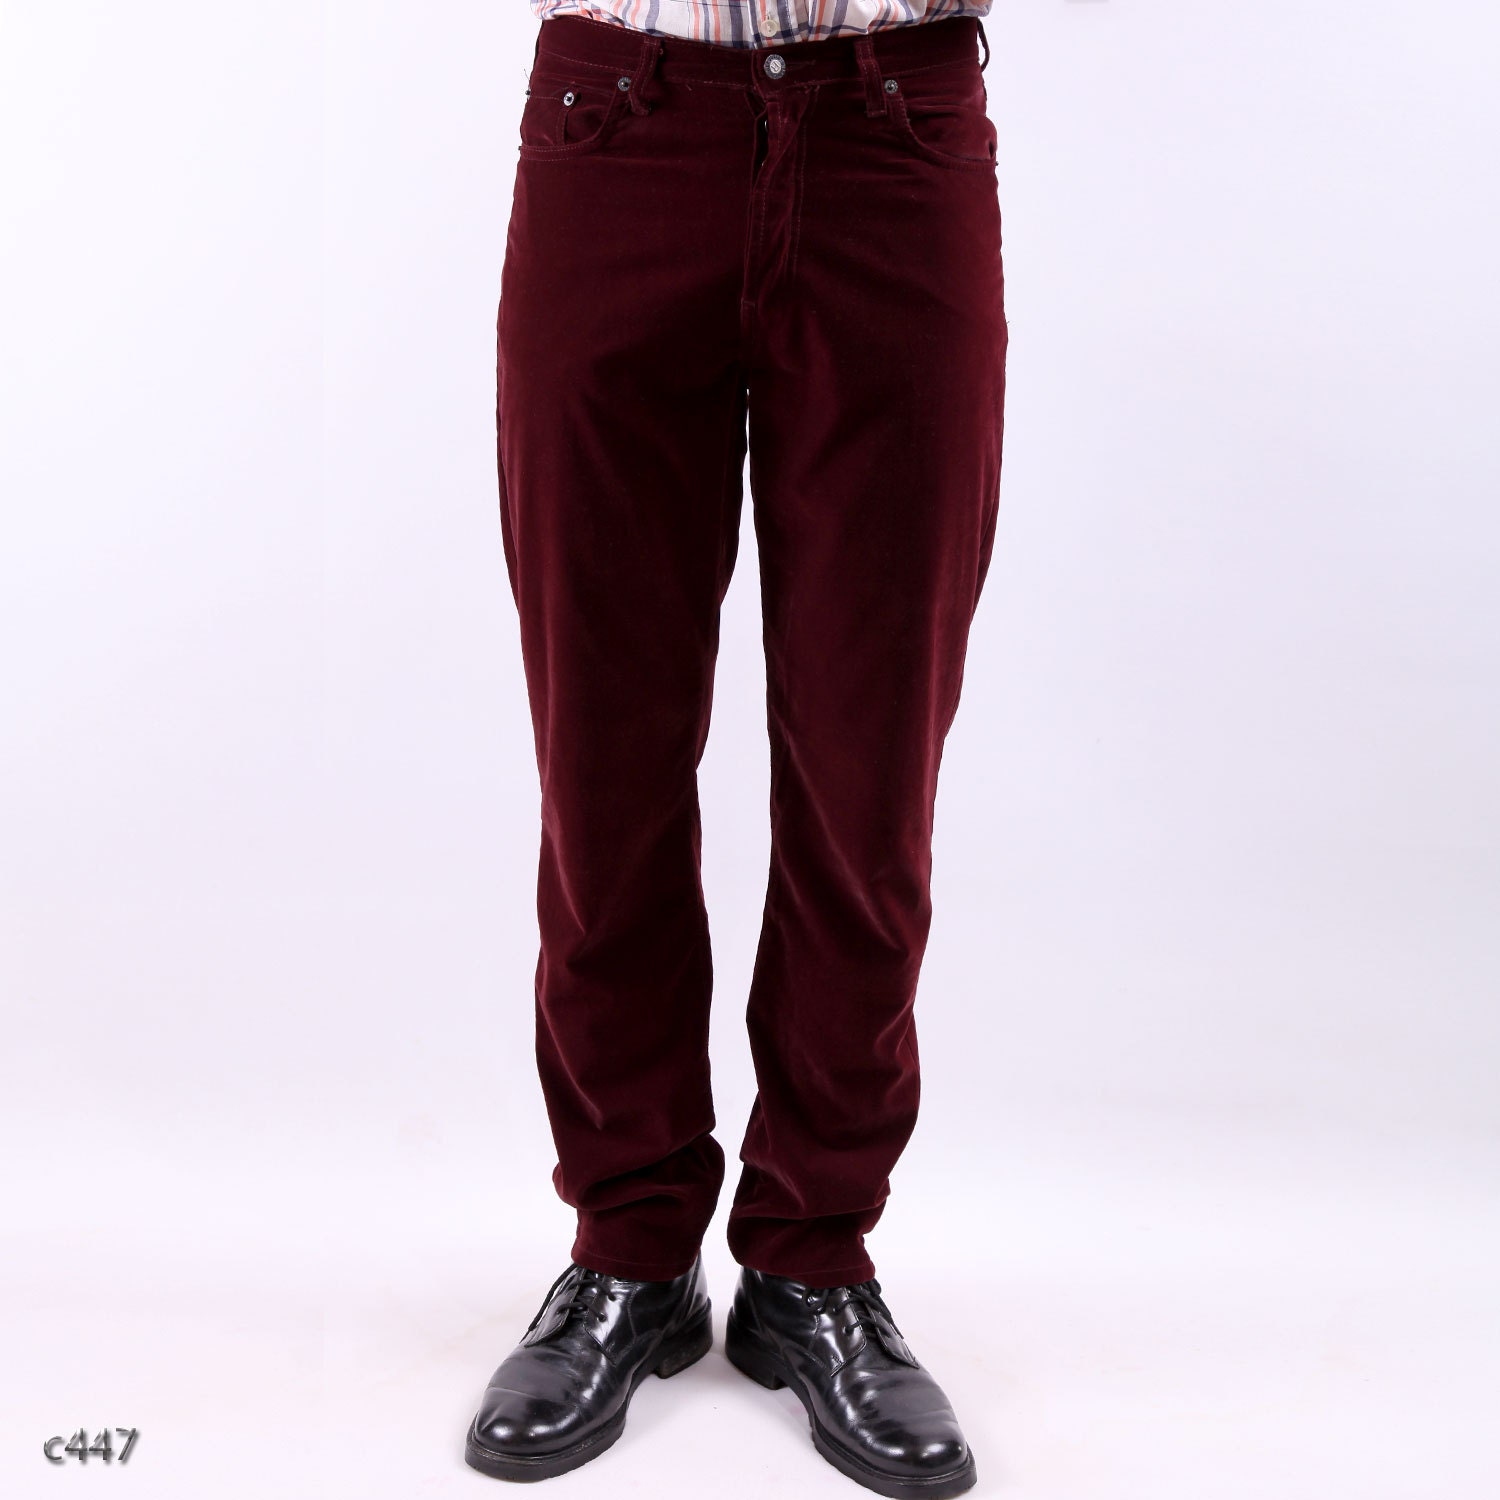 Mens Velvet Trousers / Burgundy Red Pants / S to M